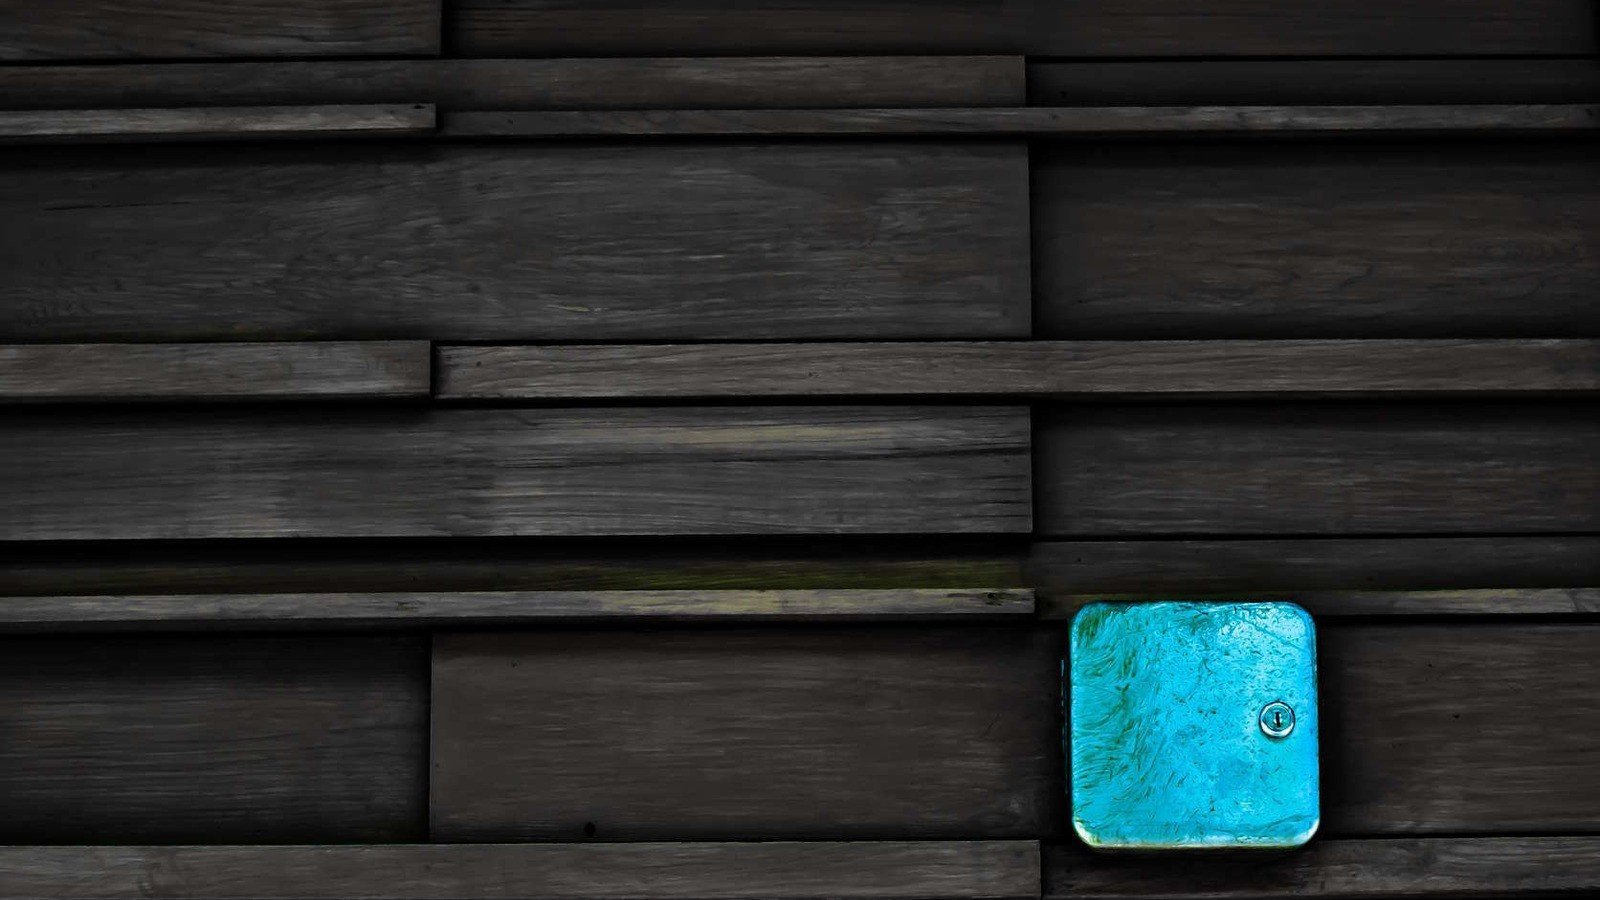 Wooden surface wallpaper: Tha hồ mà khám phá bộ sưu tập hình nền gỗ tự nhiên độc đáo của chúng tôi! Chất liệu và đường nét kết hợp tạo nên những hình ảnh tuyệt đẹp về mặt thẩm mỹ và tinh tế. Đặt làm hình nền cho thiết bị của bạn, bạn sẽ thấy khác biệt rõ rệt trong không gian sống và làm việc của mình.